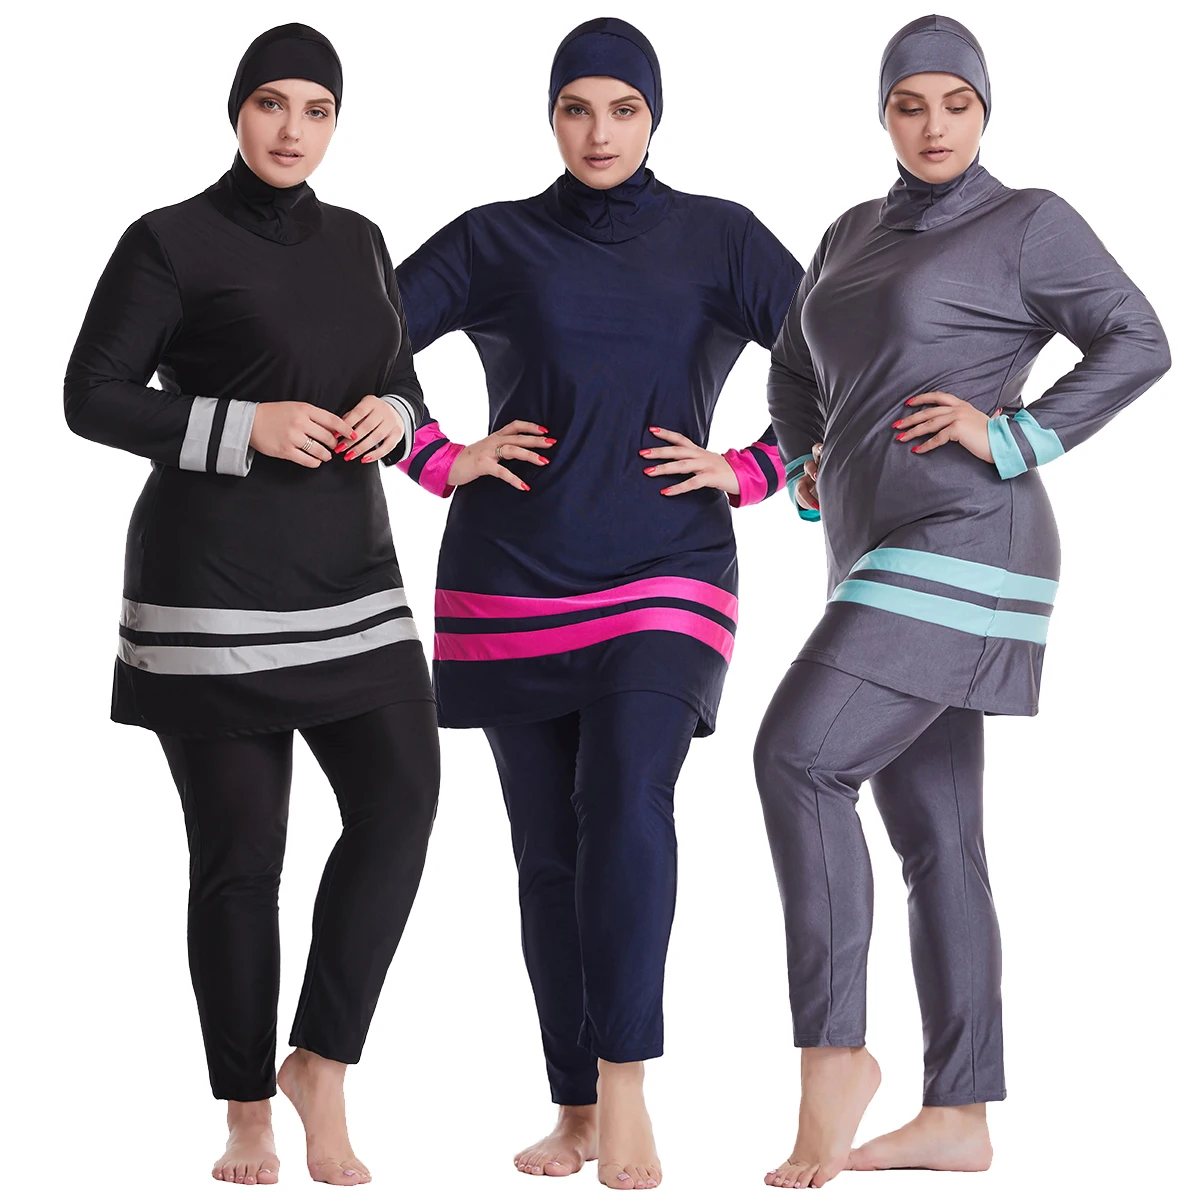 Women Lady Islamic Muslim Full Cover Swimwear Modest Beachwear Swimming Costumes